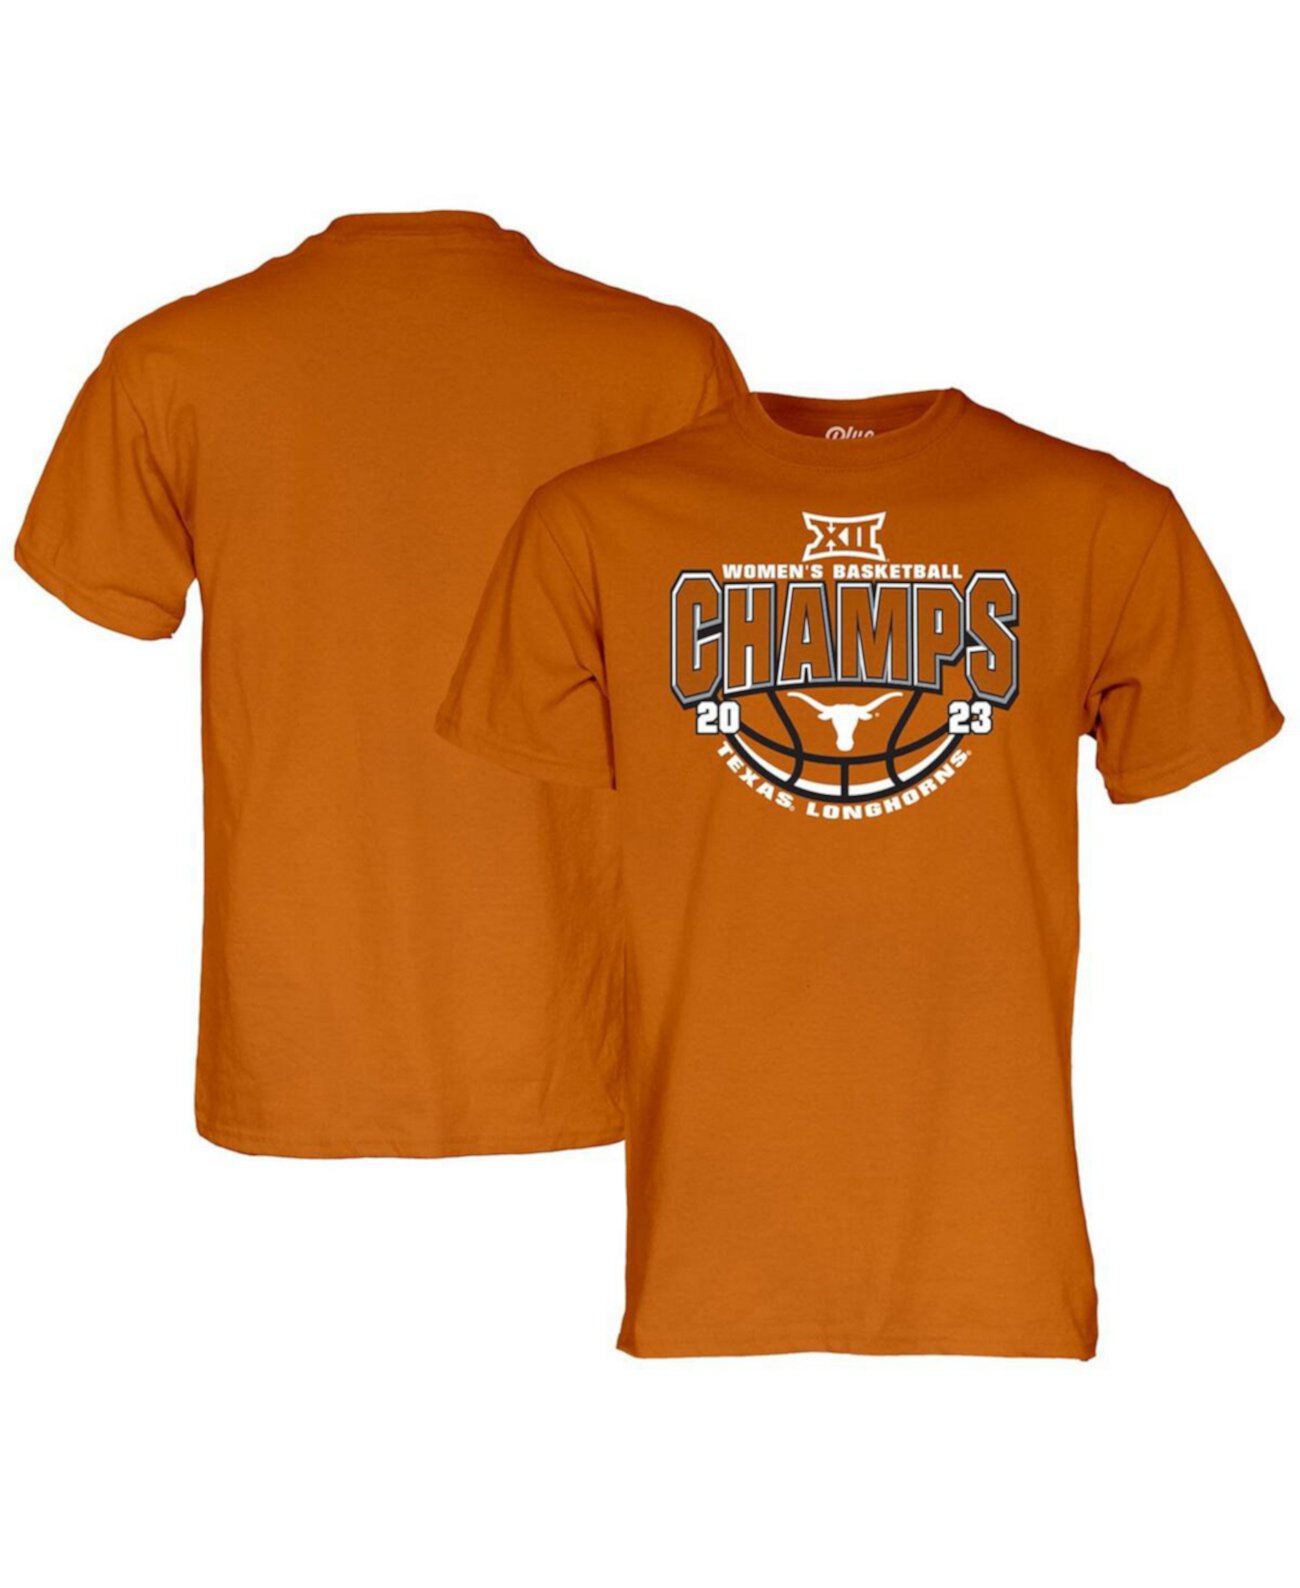 Мужская футболка Texas Orange Texas Longhorns 2023 Big 12, женская баскетбольная футболка с чемпионами регулярного сезона Blue 84